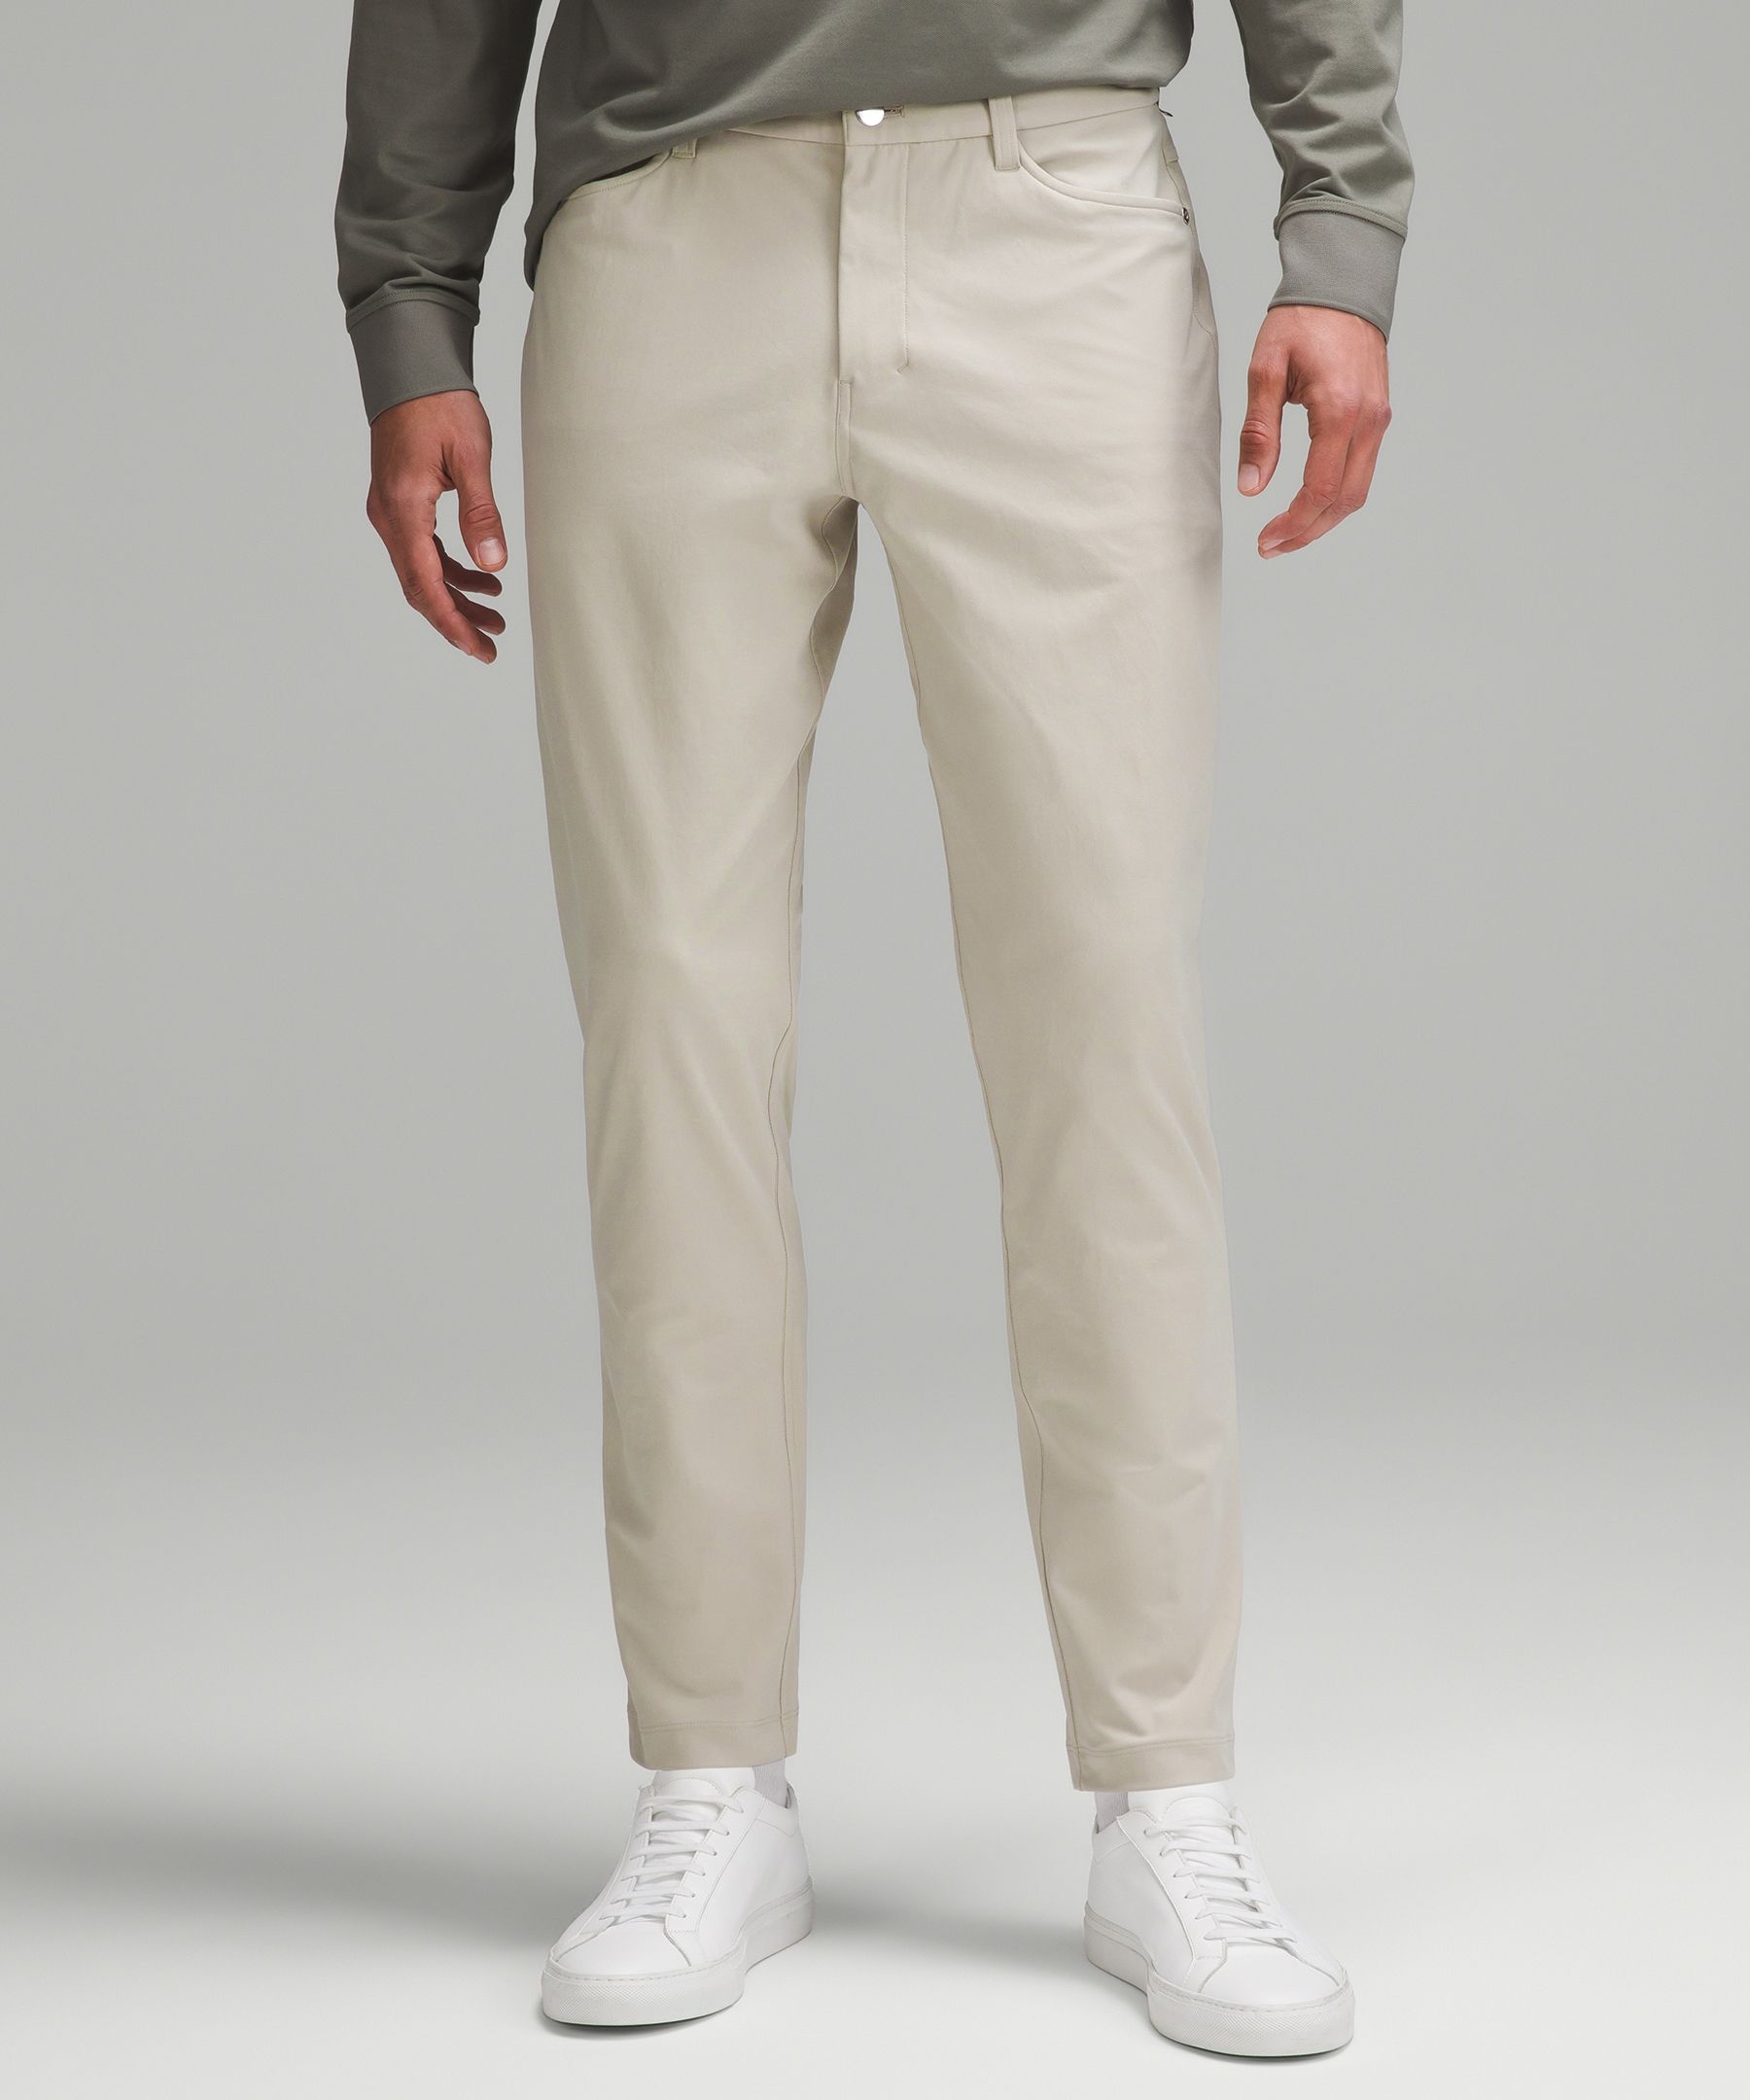 ABC Classic-Fit 5 Pocket Pant 30L *Warpstreme, Men's Trousers, lululemon